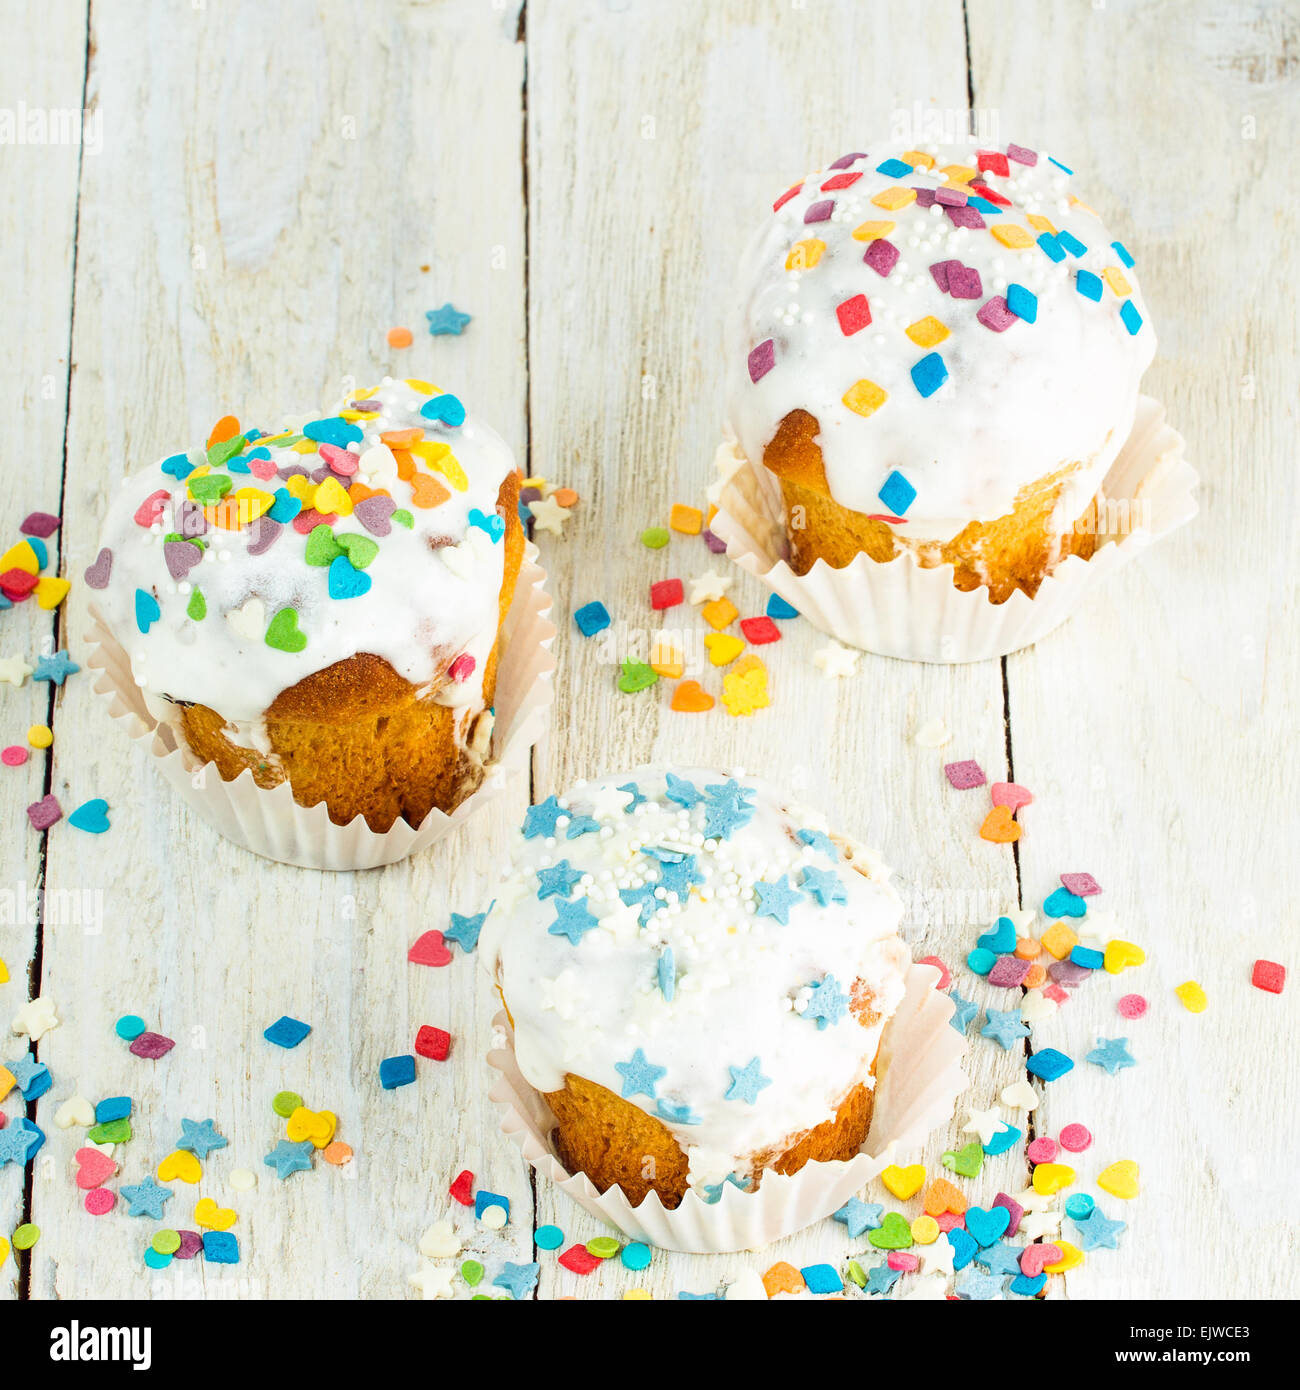 Tasty little cakes Stock Photo